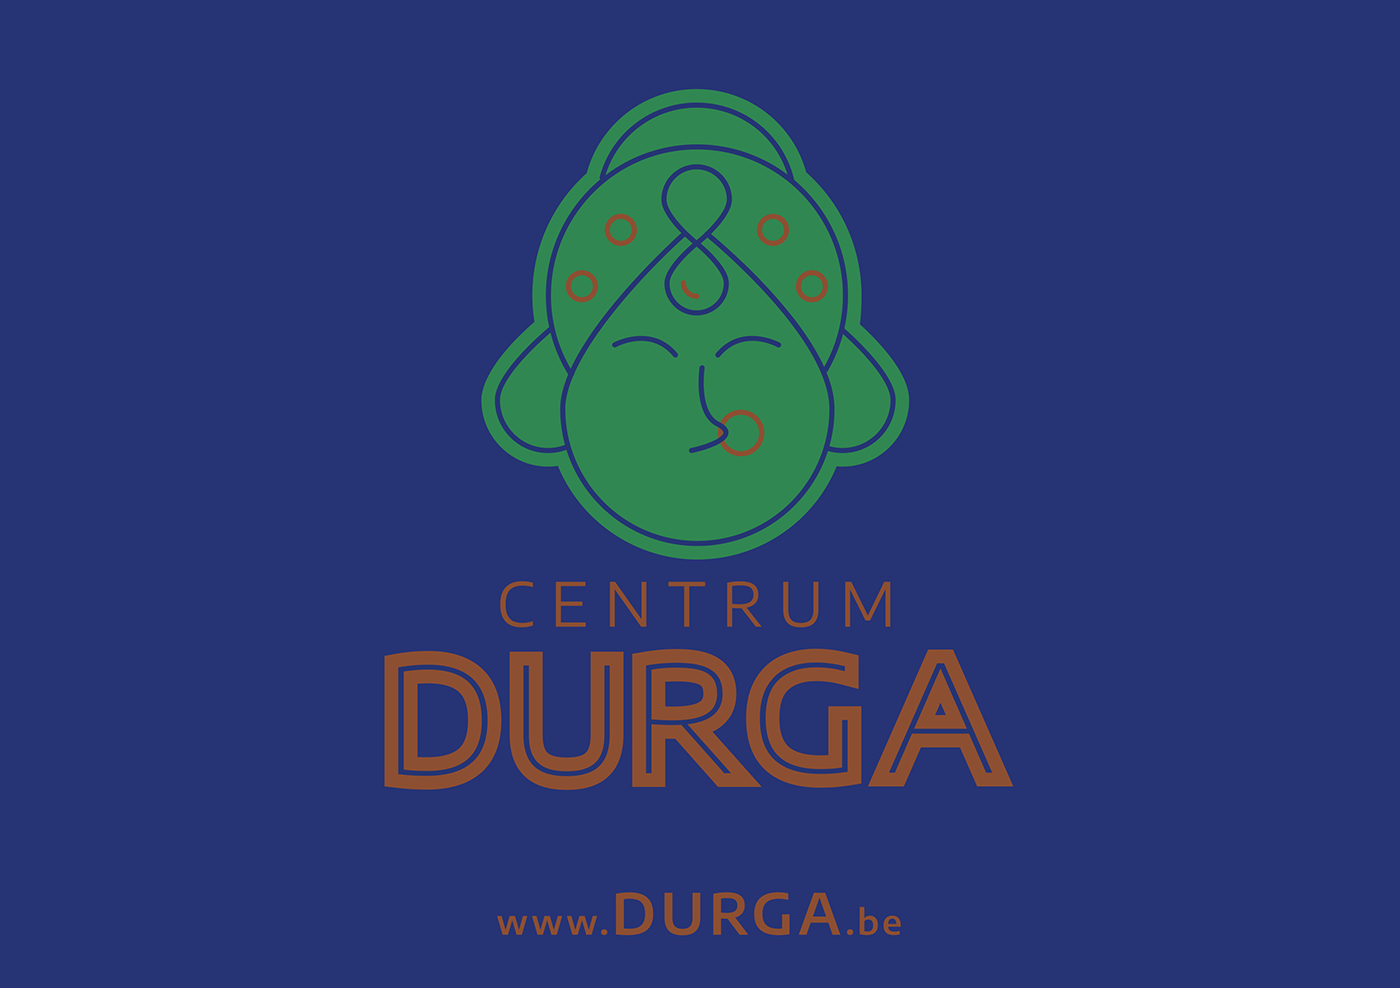 Durga branding  logo Brand Design